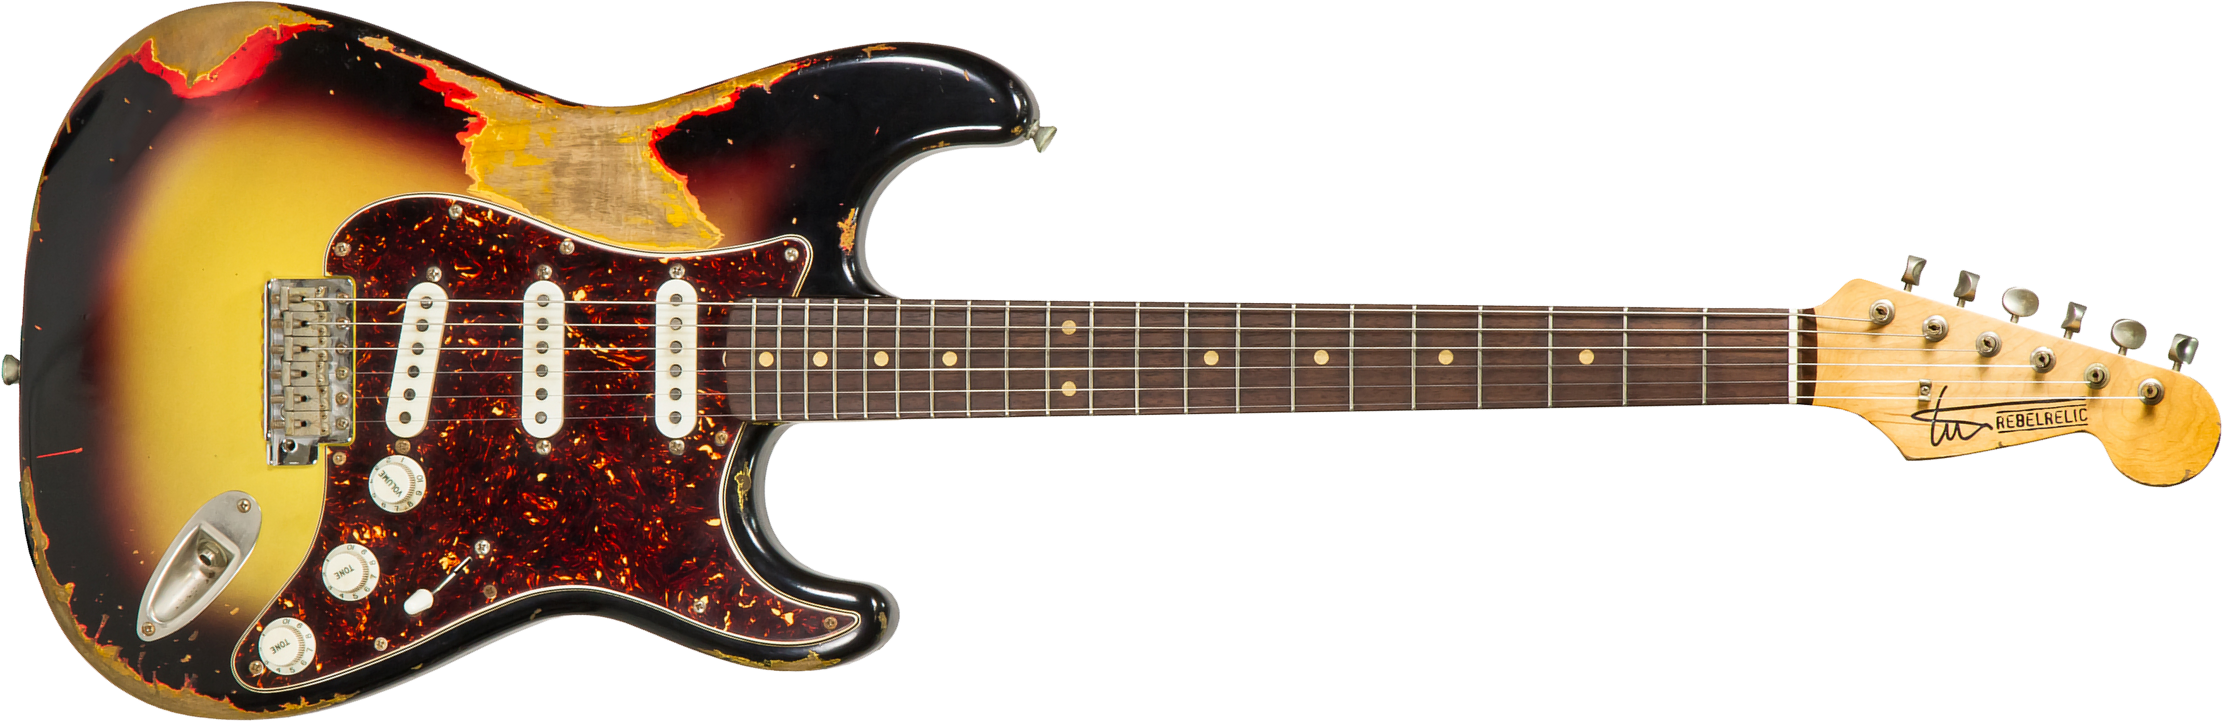 Rebelrelic S-series 62 Rw #62110 - Heavy Aging 3-tone Sunburst - Guitare Électrique Forme Str - Main picture